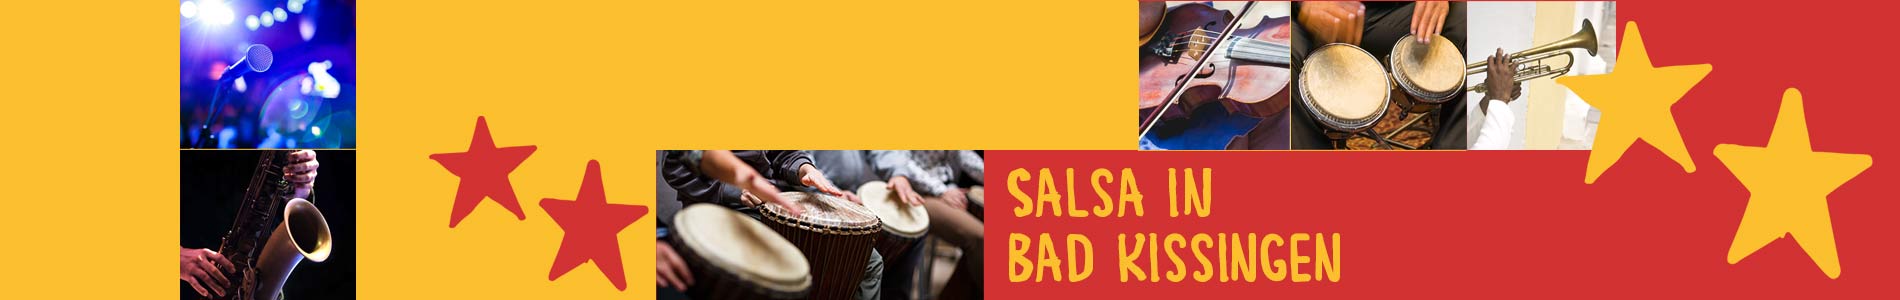 Salsa in Bad Kissingen – Salsa lernen und tanzen, Tanzkurse, Partys, Veranstaltungen